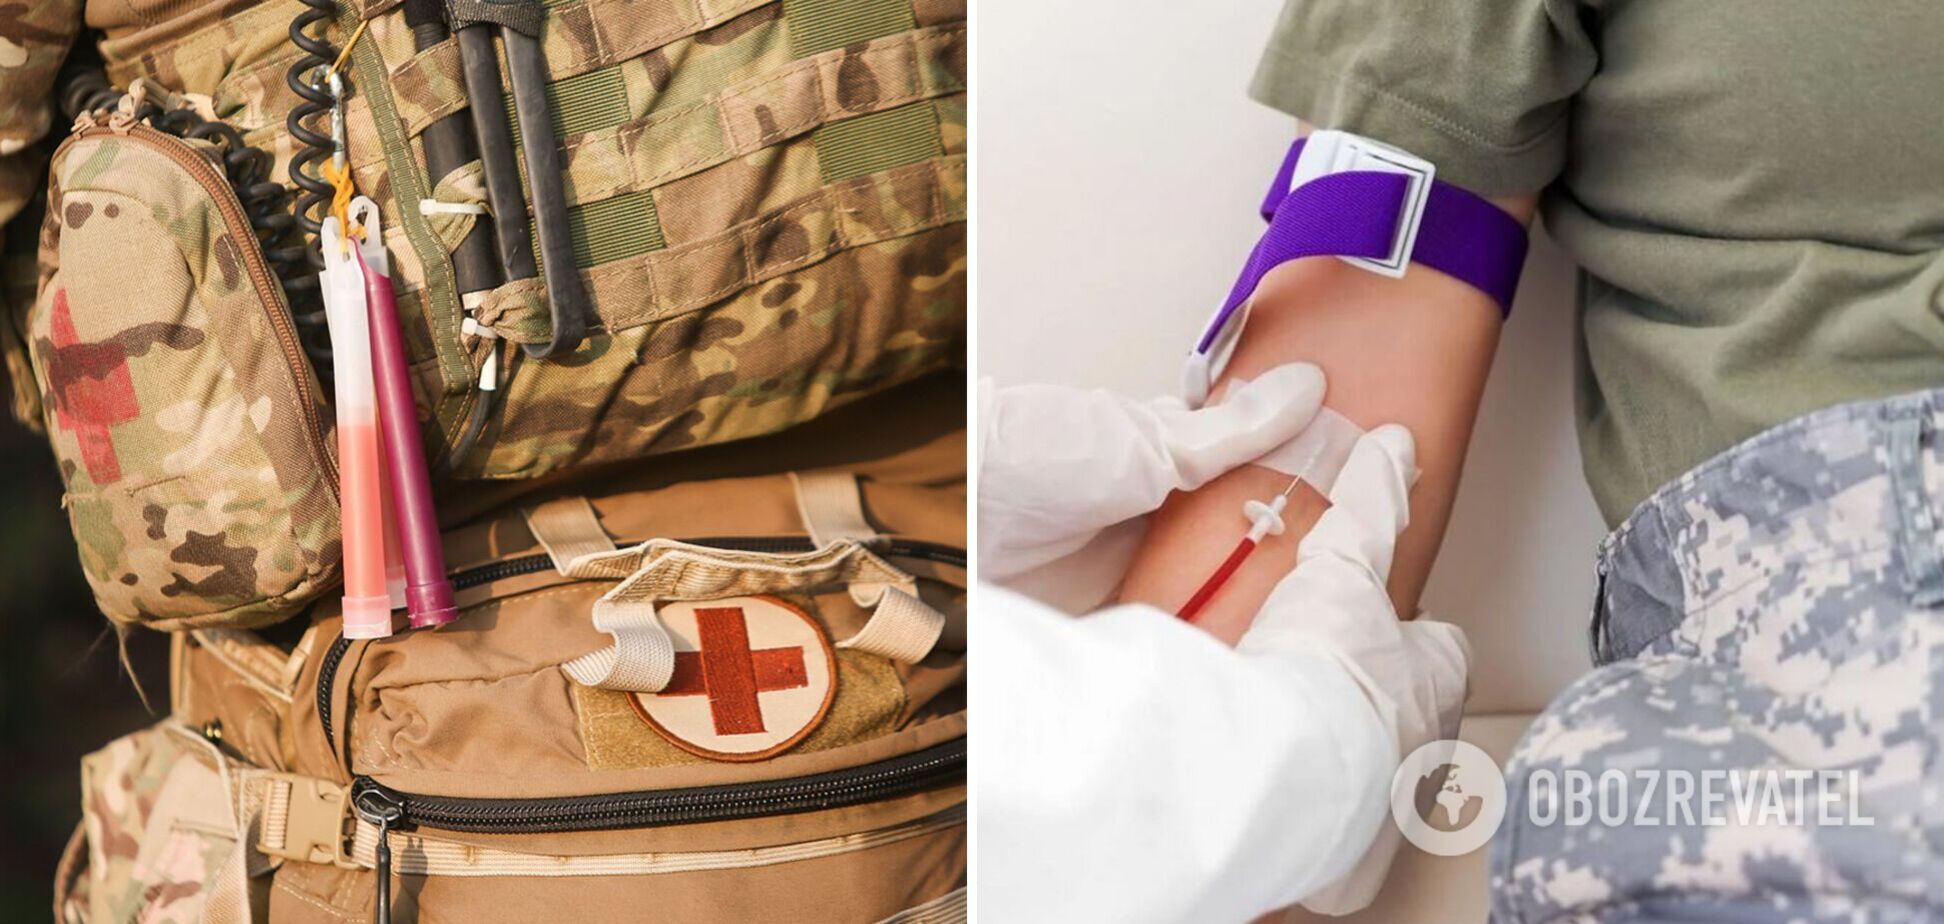 Те, кто стоит на пути смерти: поздравления для боевых медиков, которые спасают украинских героев